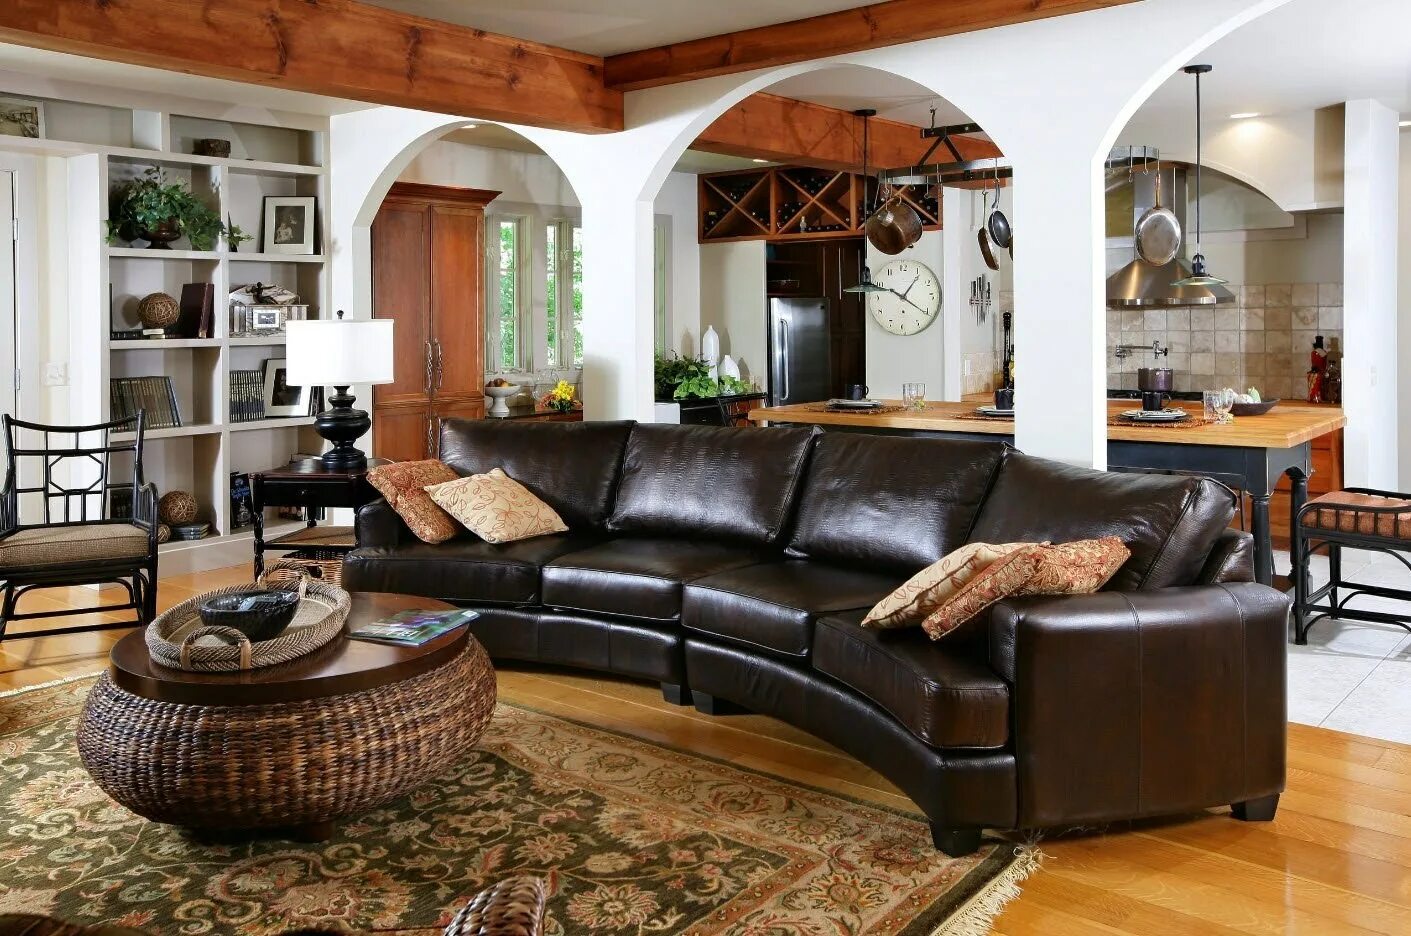 Кожаная мебель в интерьере. Мягкая мебель в интерьере. Кожаный диван в интерьере. Гостиная с кожаным диваном.